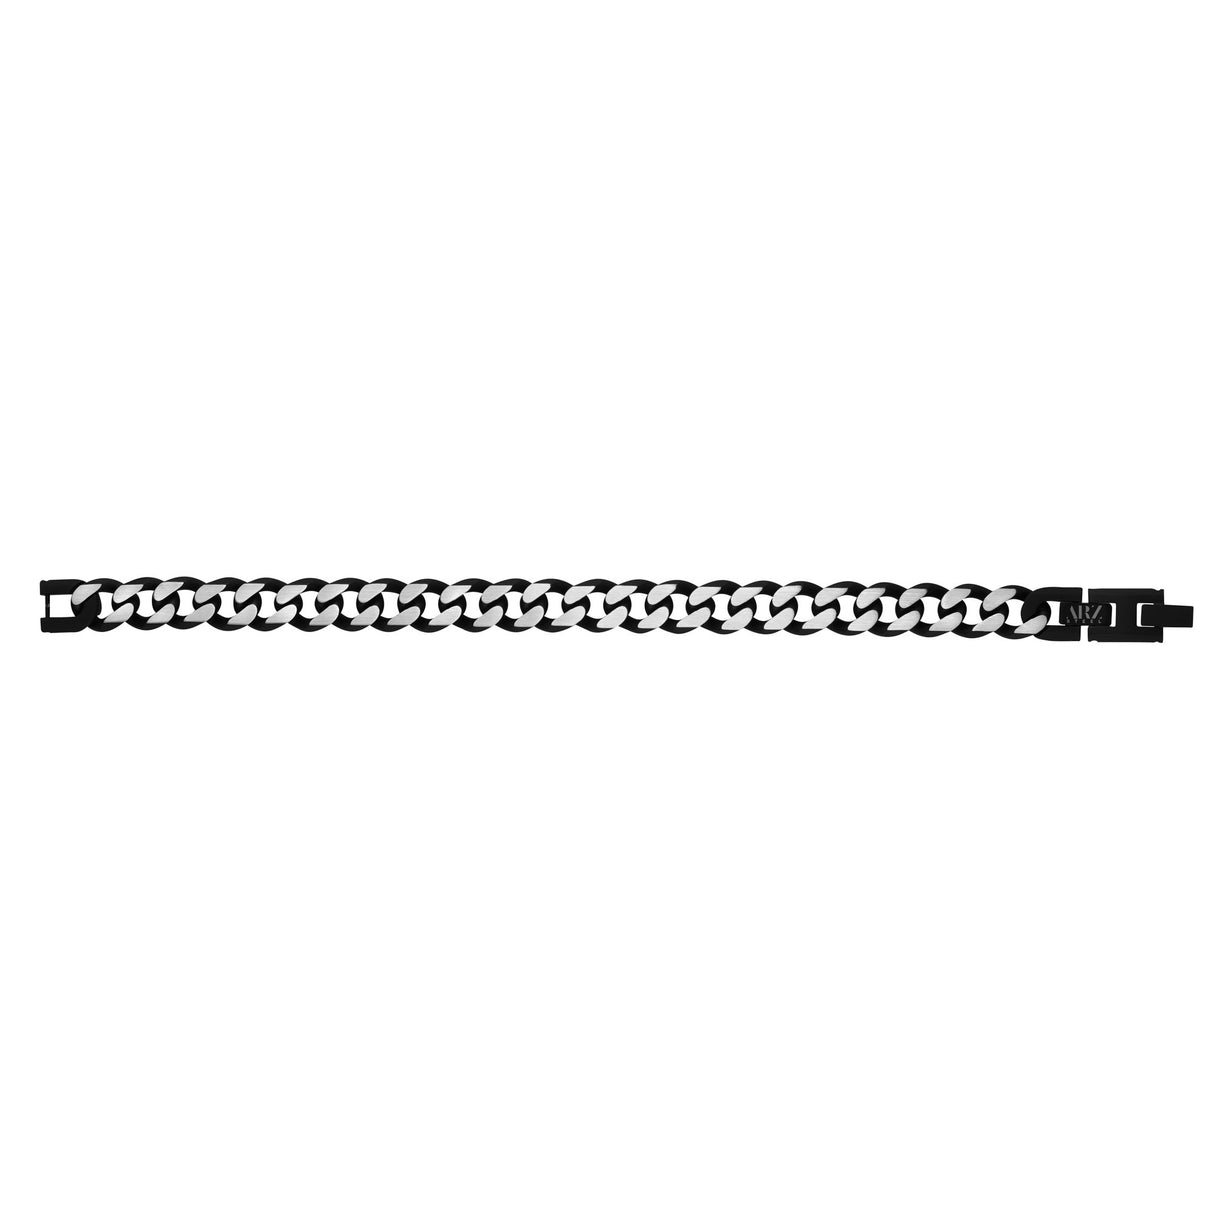 Mens Steel Bracelets - 11mm Black Two Tone Steel Cuban Link Bracelet